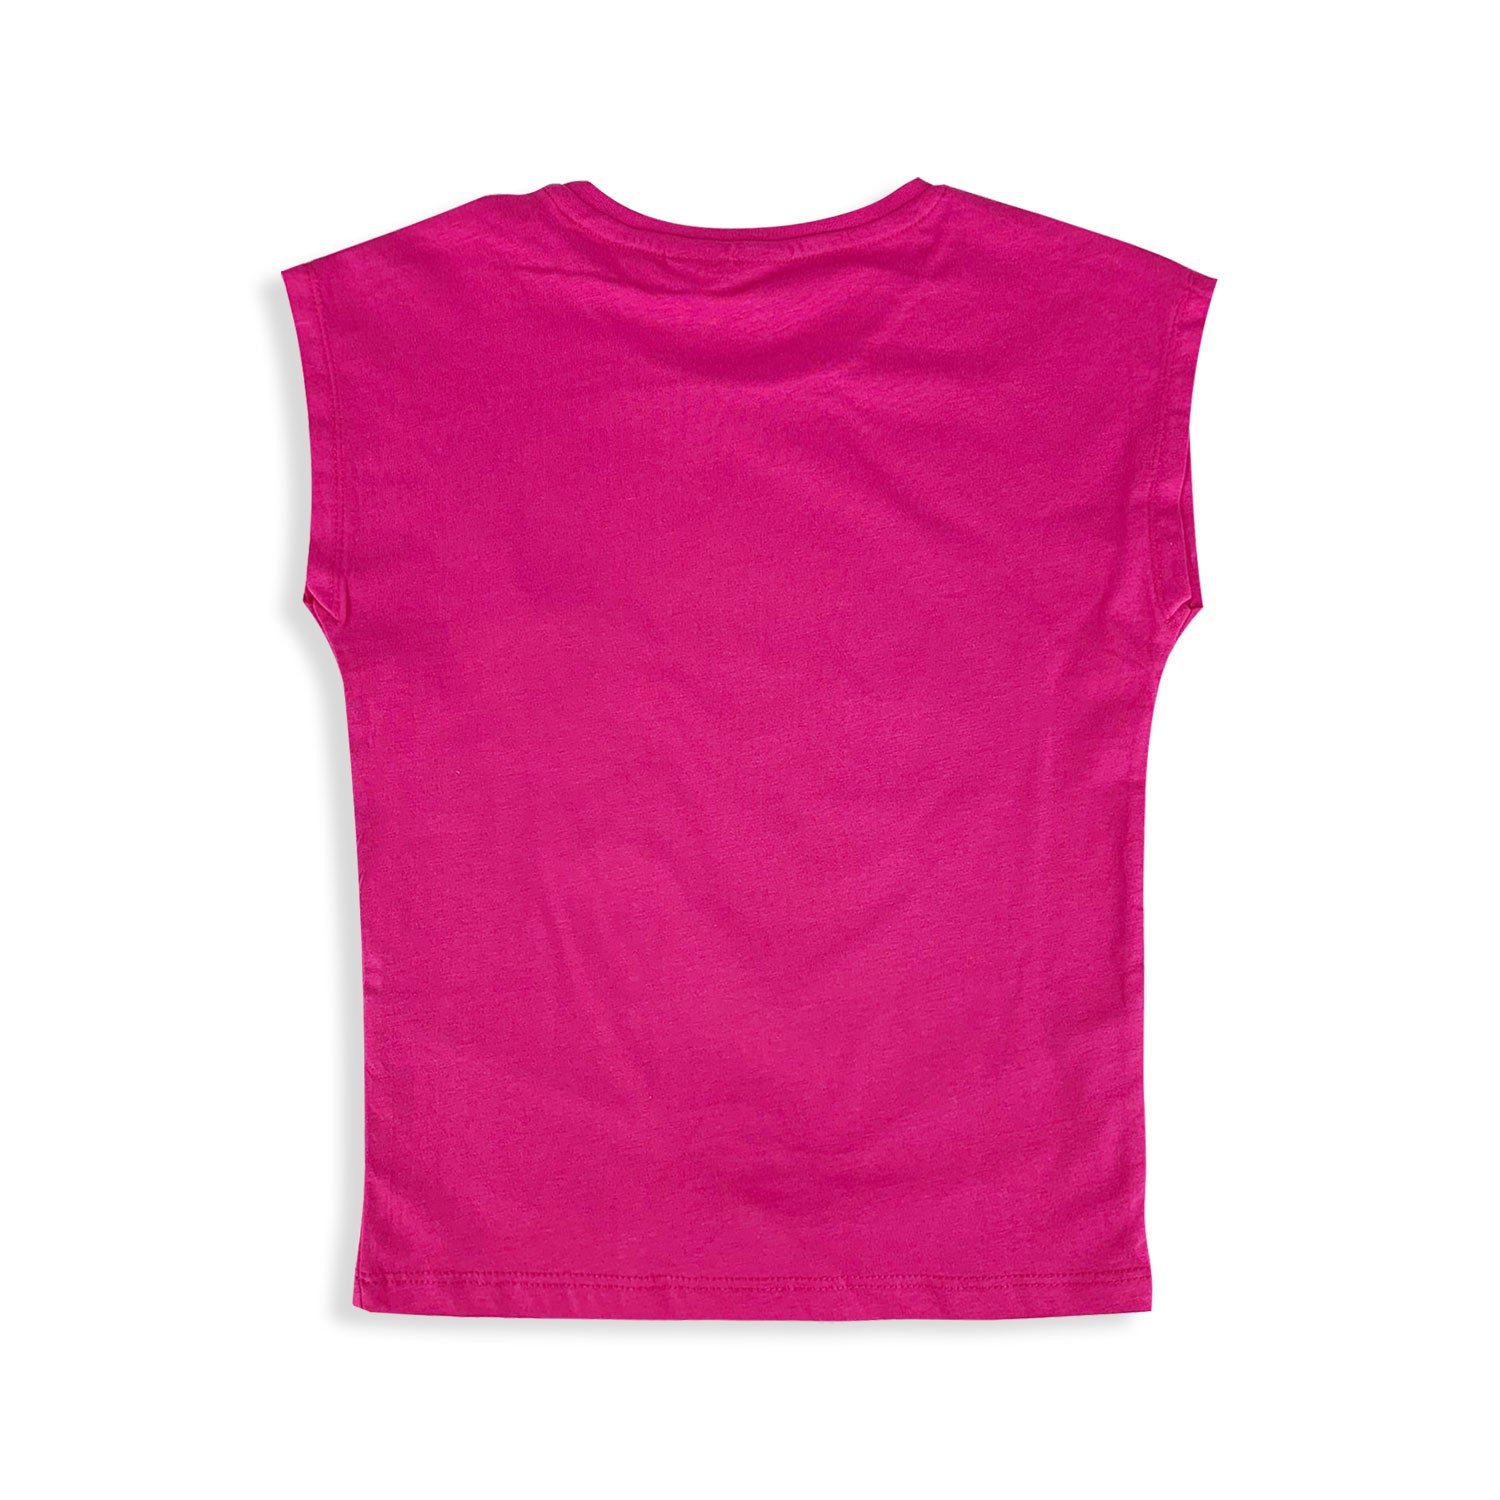 T-shirt Peppa Pig maglietta maniche corte maglia bambina in cotone 5428